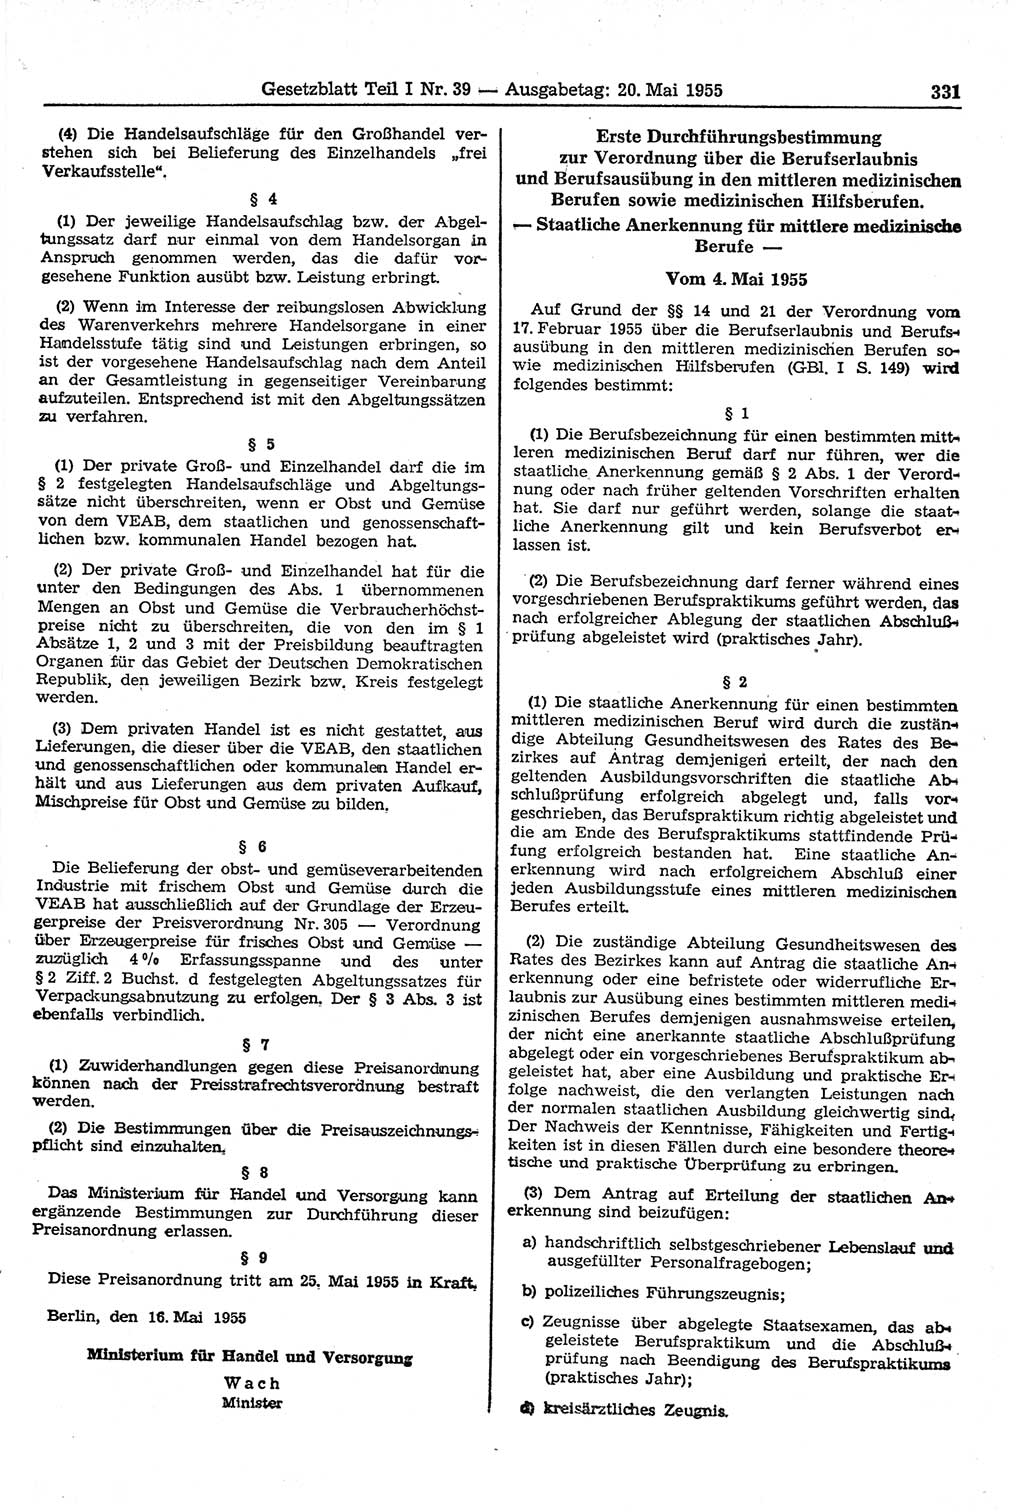 Gesetzblatt (GBl.) der Deutschen Demokratischen Republik (DDR) Teil Ⅰ 1955, Seite 331 (GBl. DDR Ⅰ 1955, S. 331)